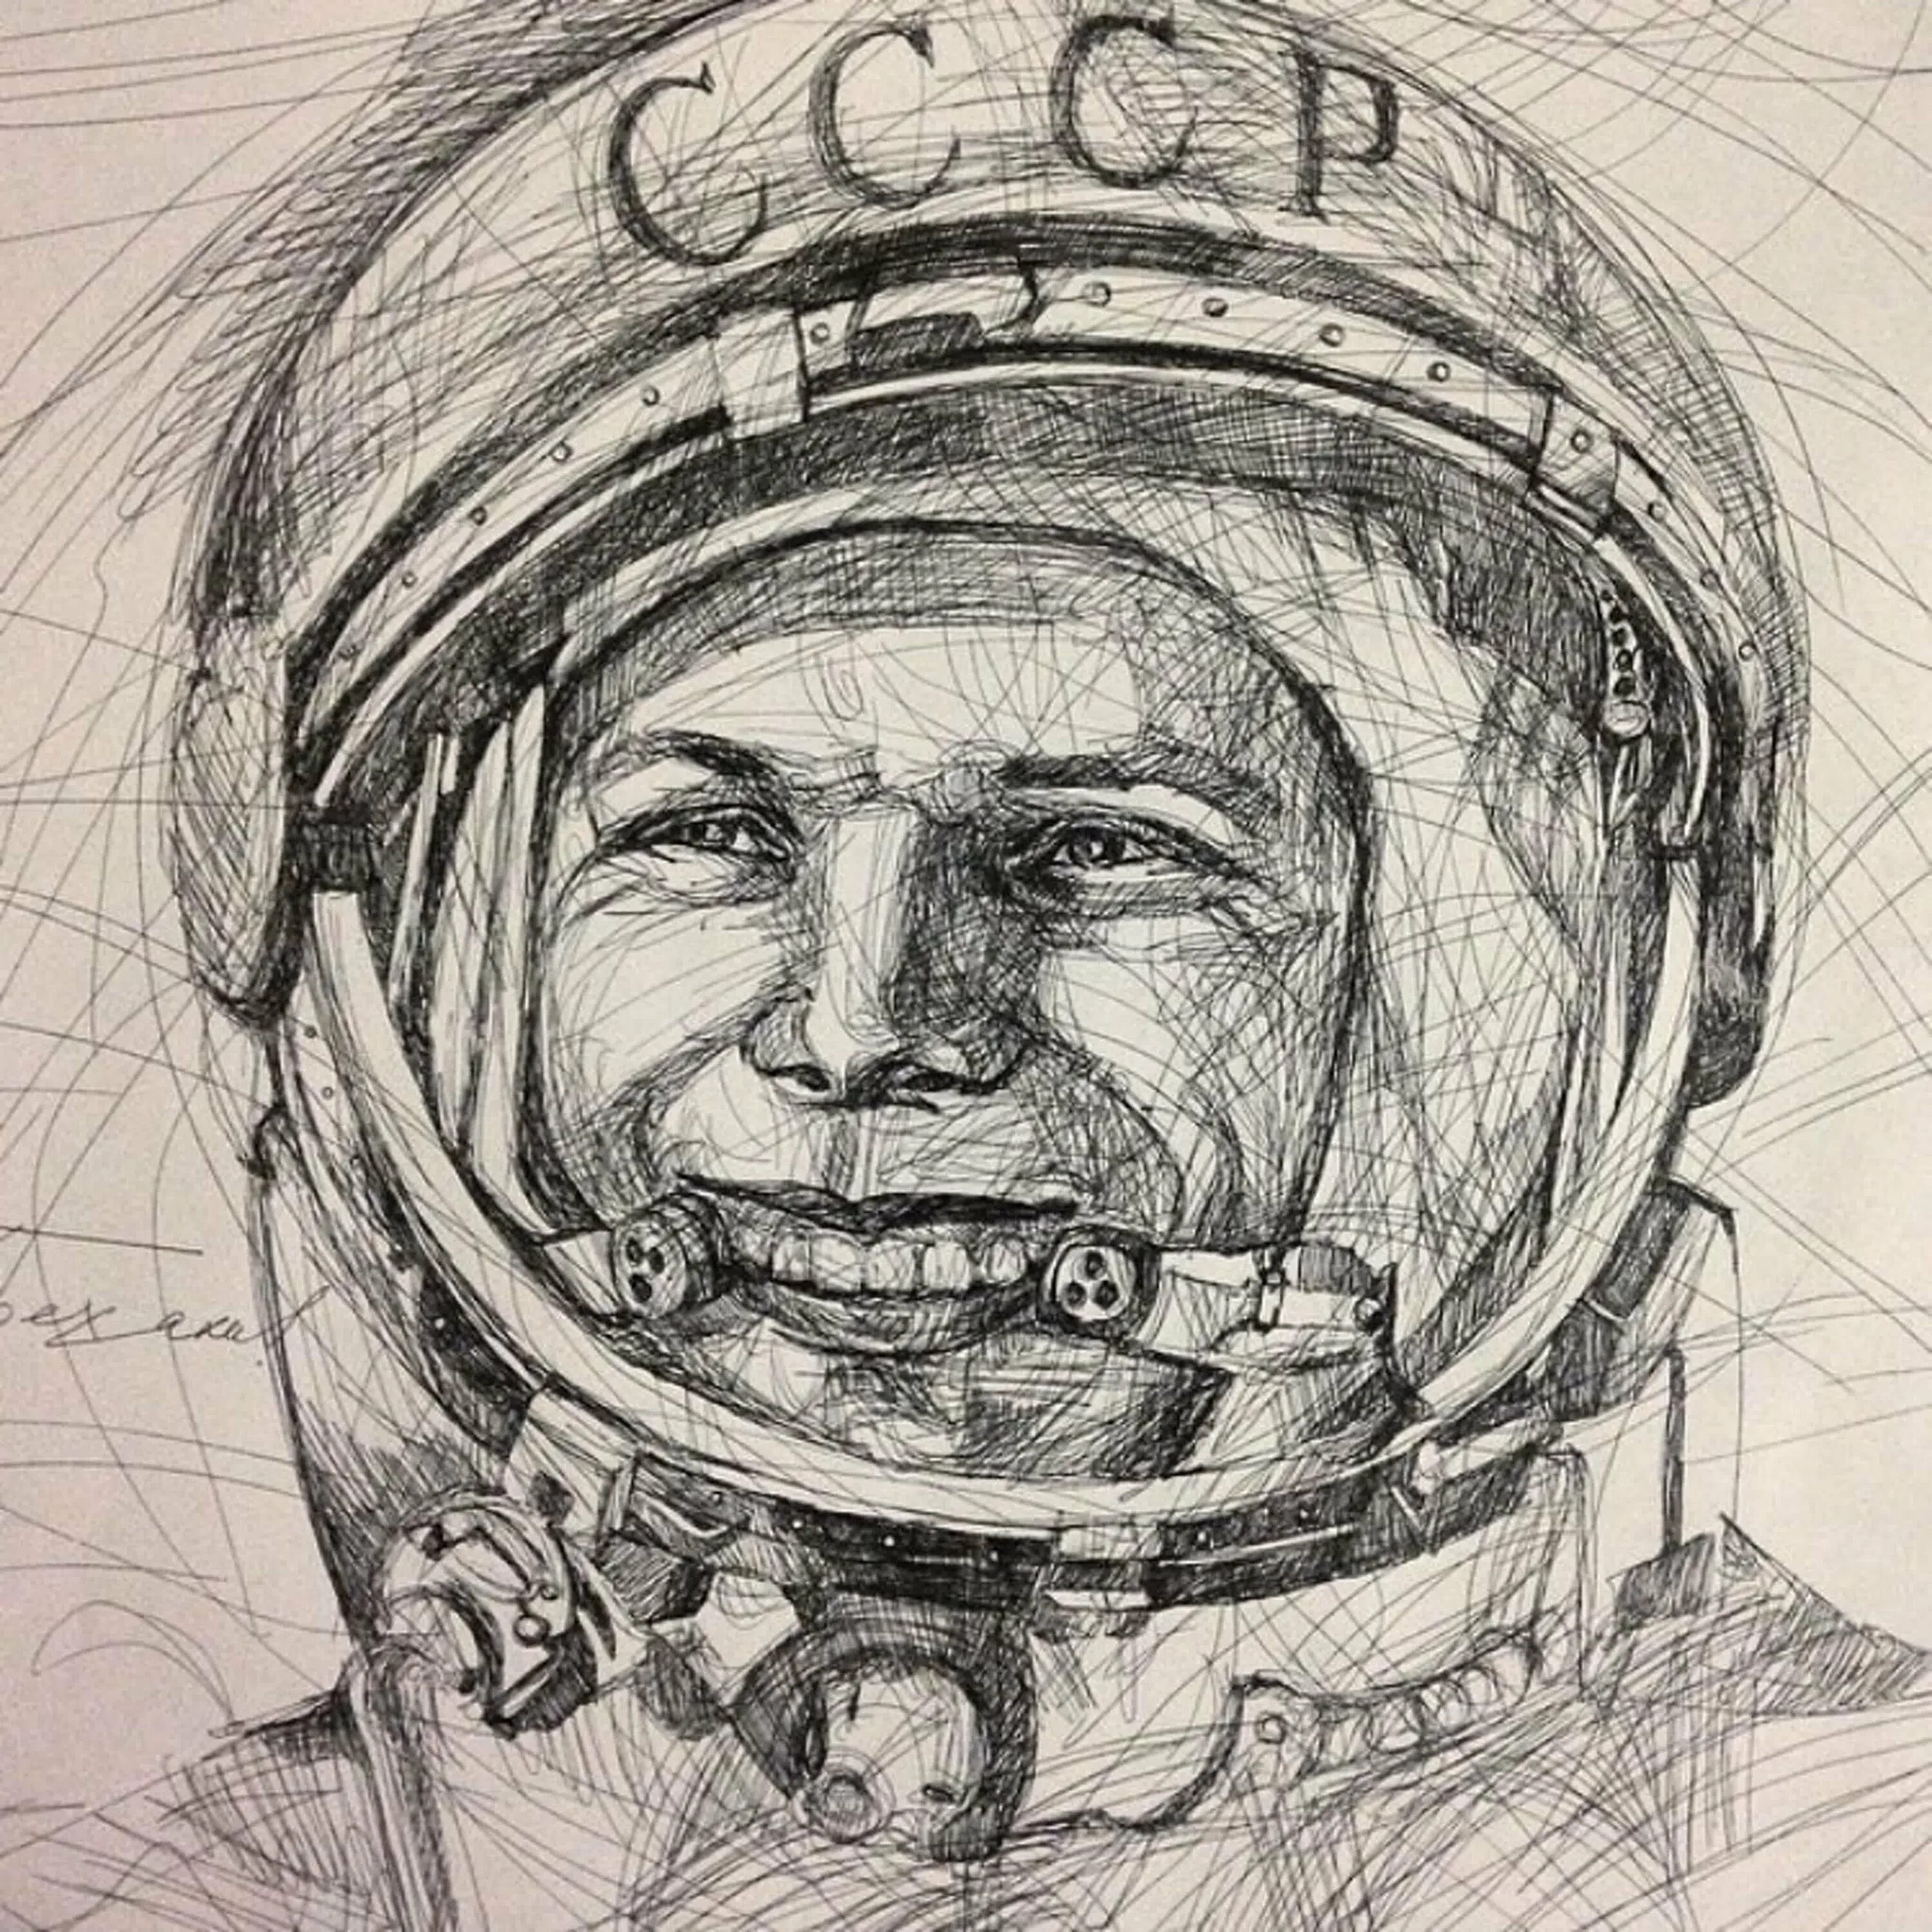 Портрет гагарина на день космонавтики. Портрет Юрия Гагарина в скафандре.